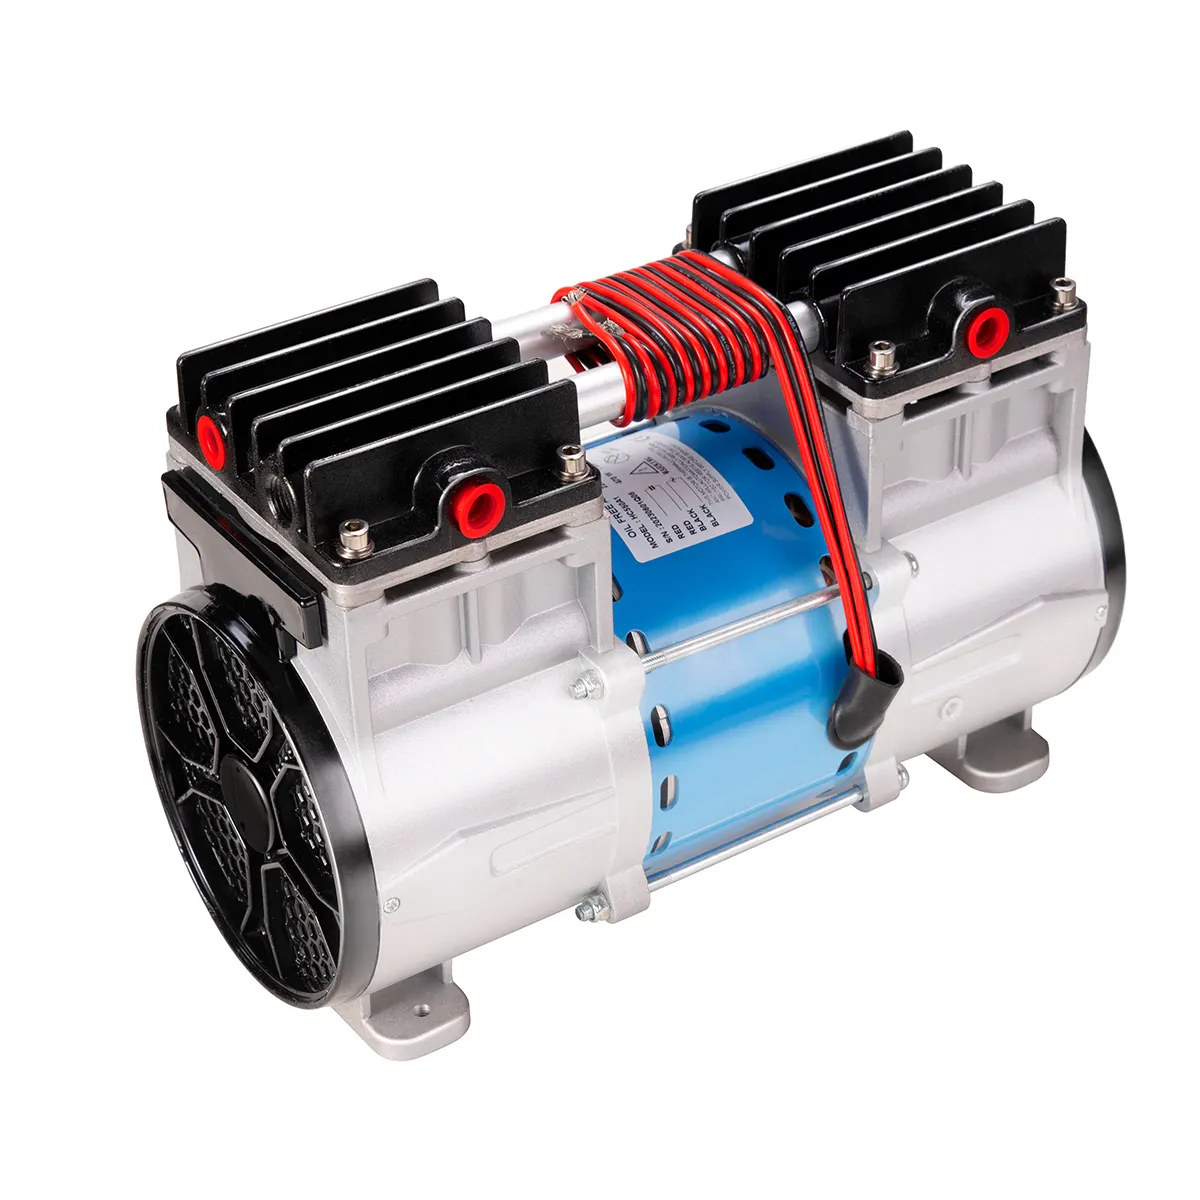 Nuevo diseño 0.64HP compresor de aire bomba de compresor de aire sin aceite 4 etapas Cooper motor compresor de aire dental fábrica